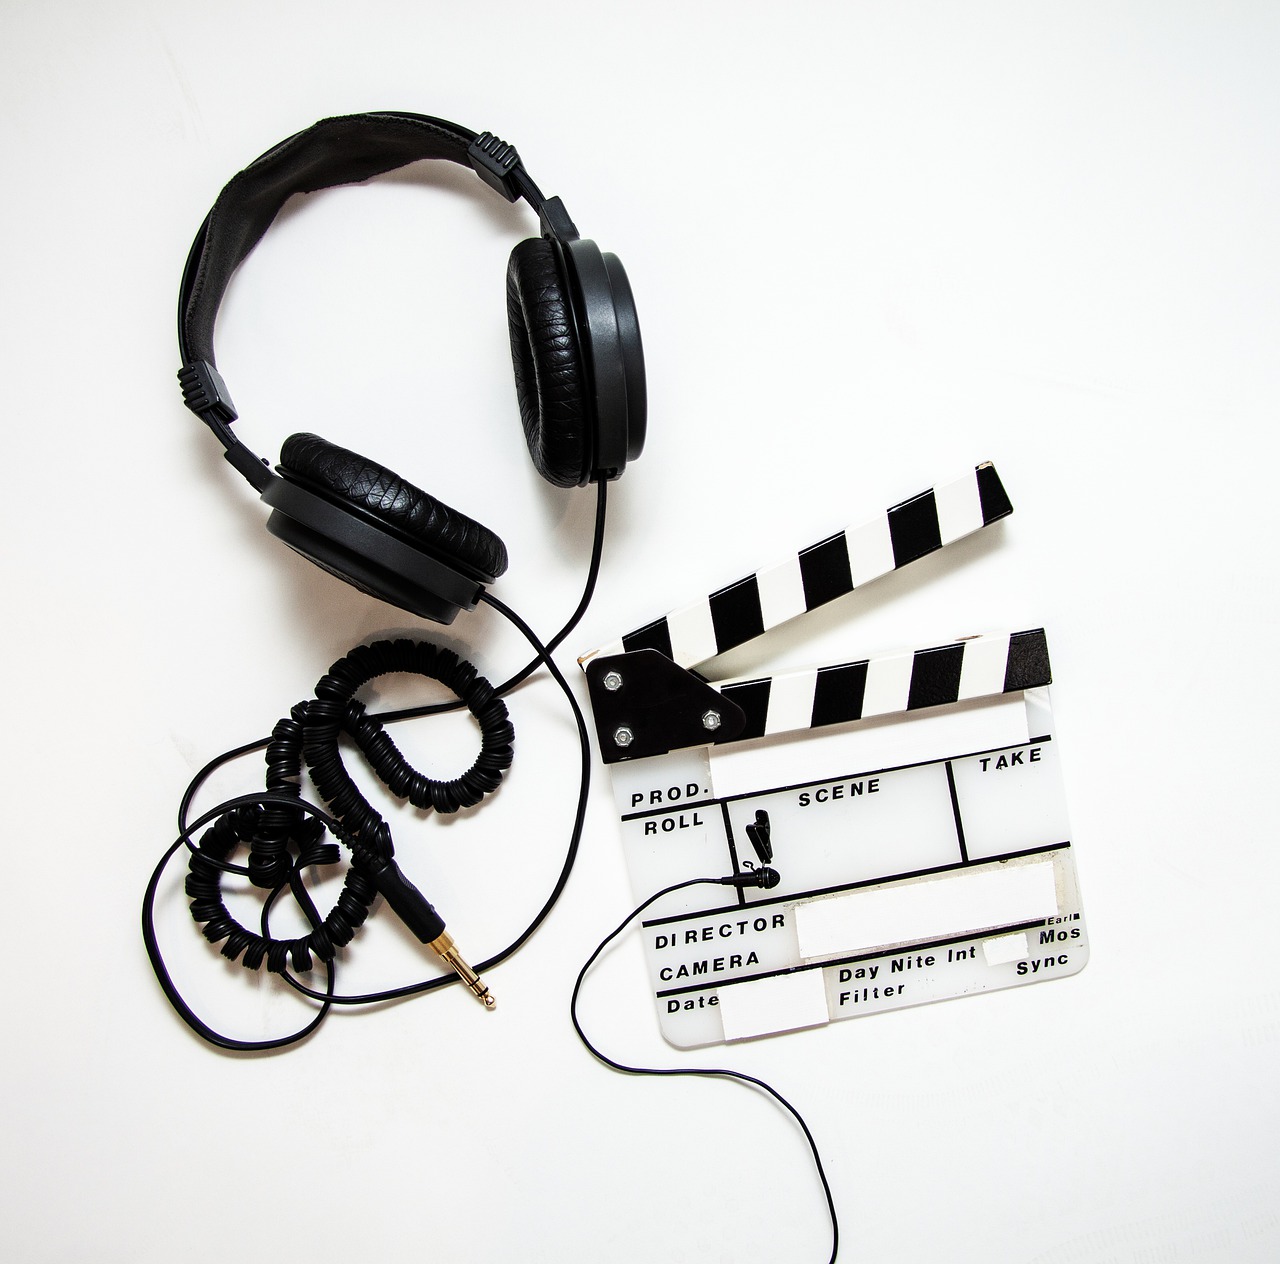 étapes de la production audiovisuelle